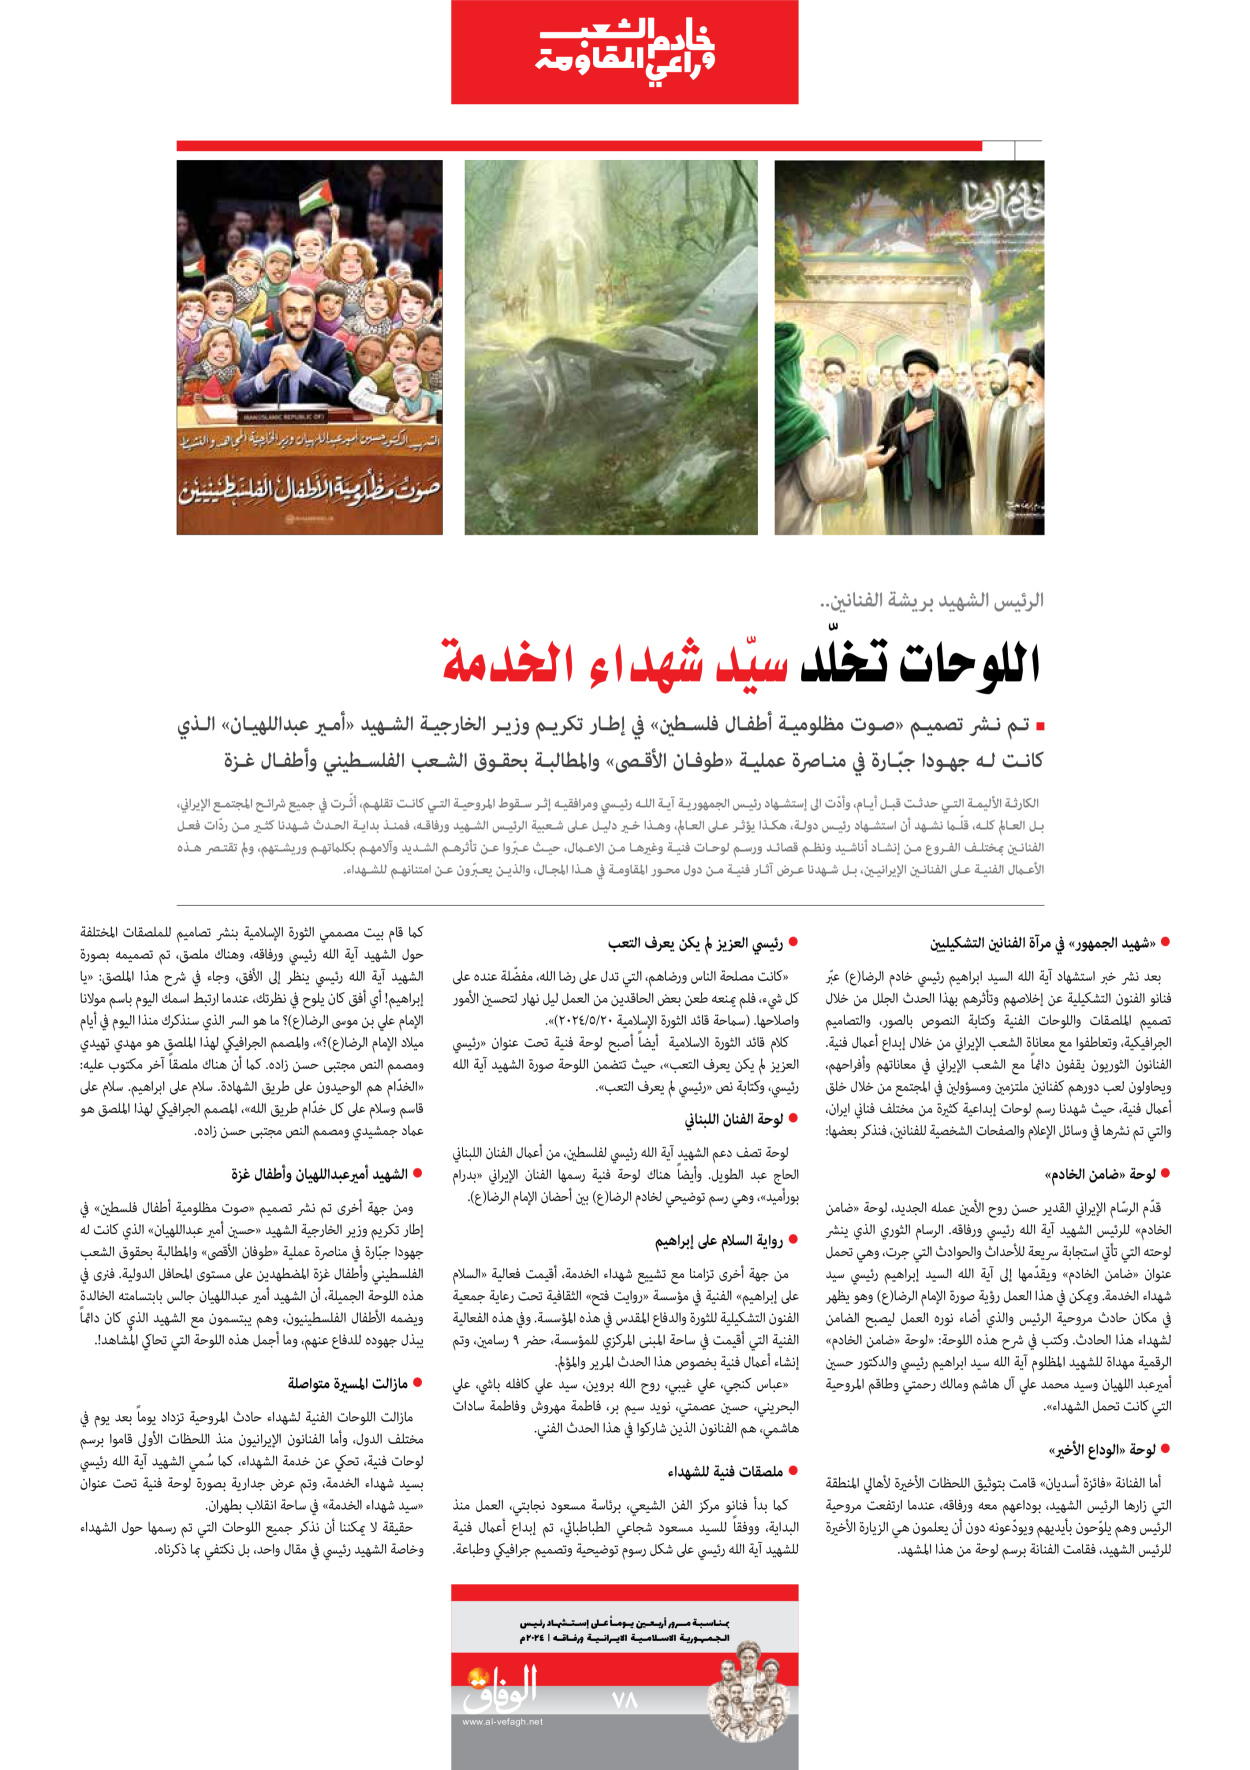 صحیفة ایران الدولیة الوفاق - ملحق ویژه نامه چهلم شهید رییسی - ٢٩ يونيو ٢٠٢٤ - الصفحة ۷۸